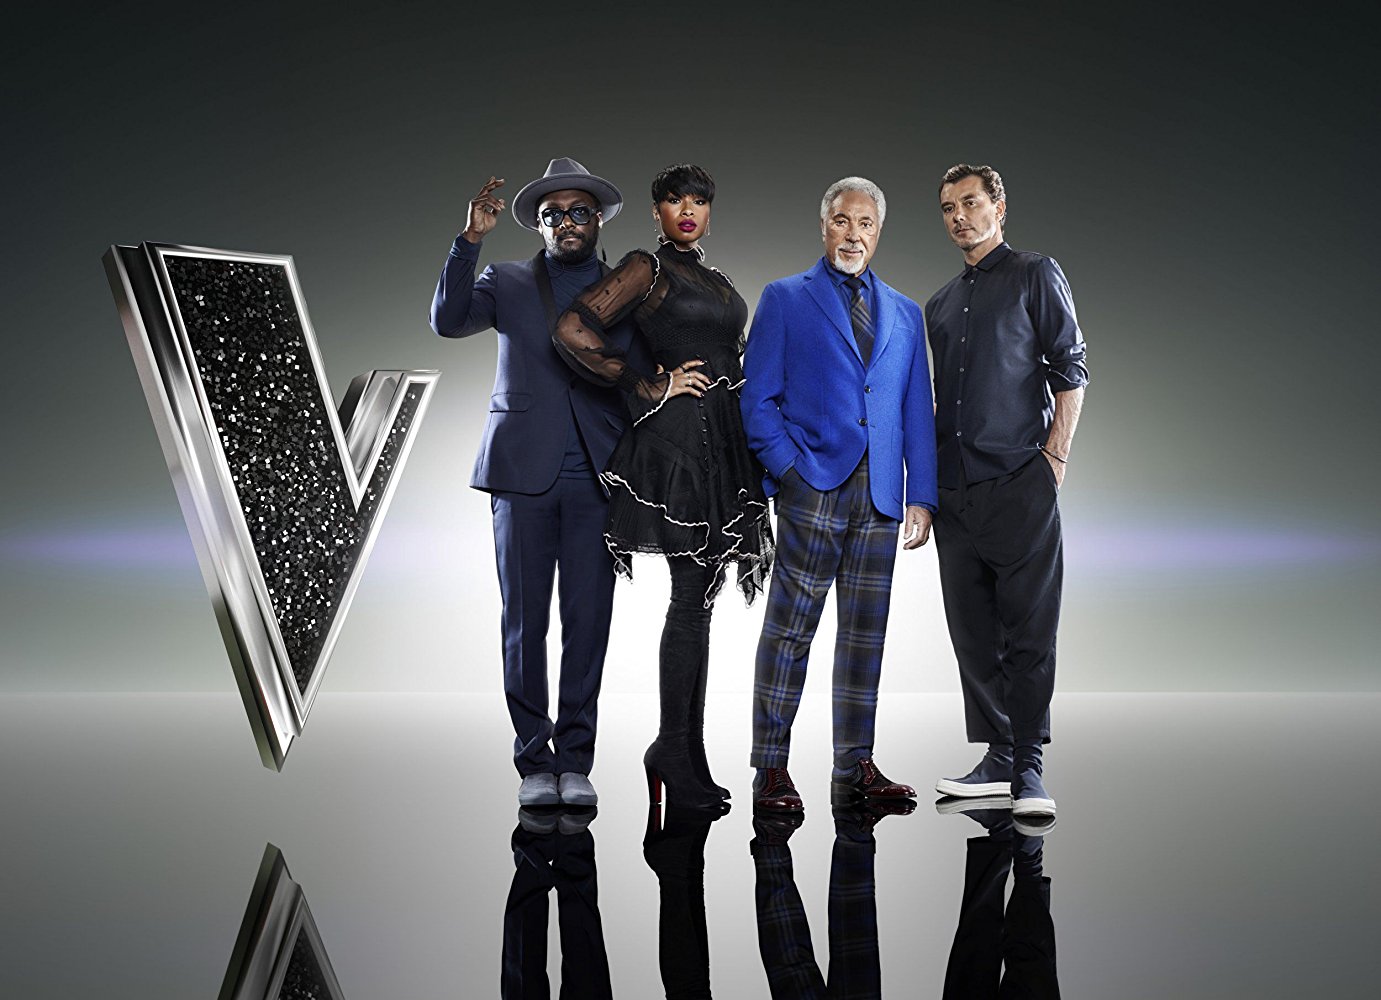 Watch The Voice UK - Season 7